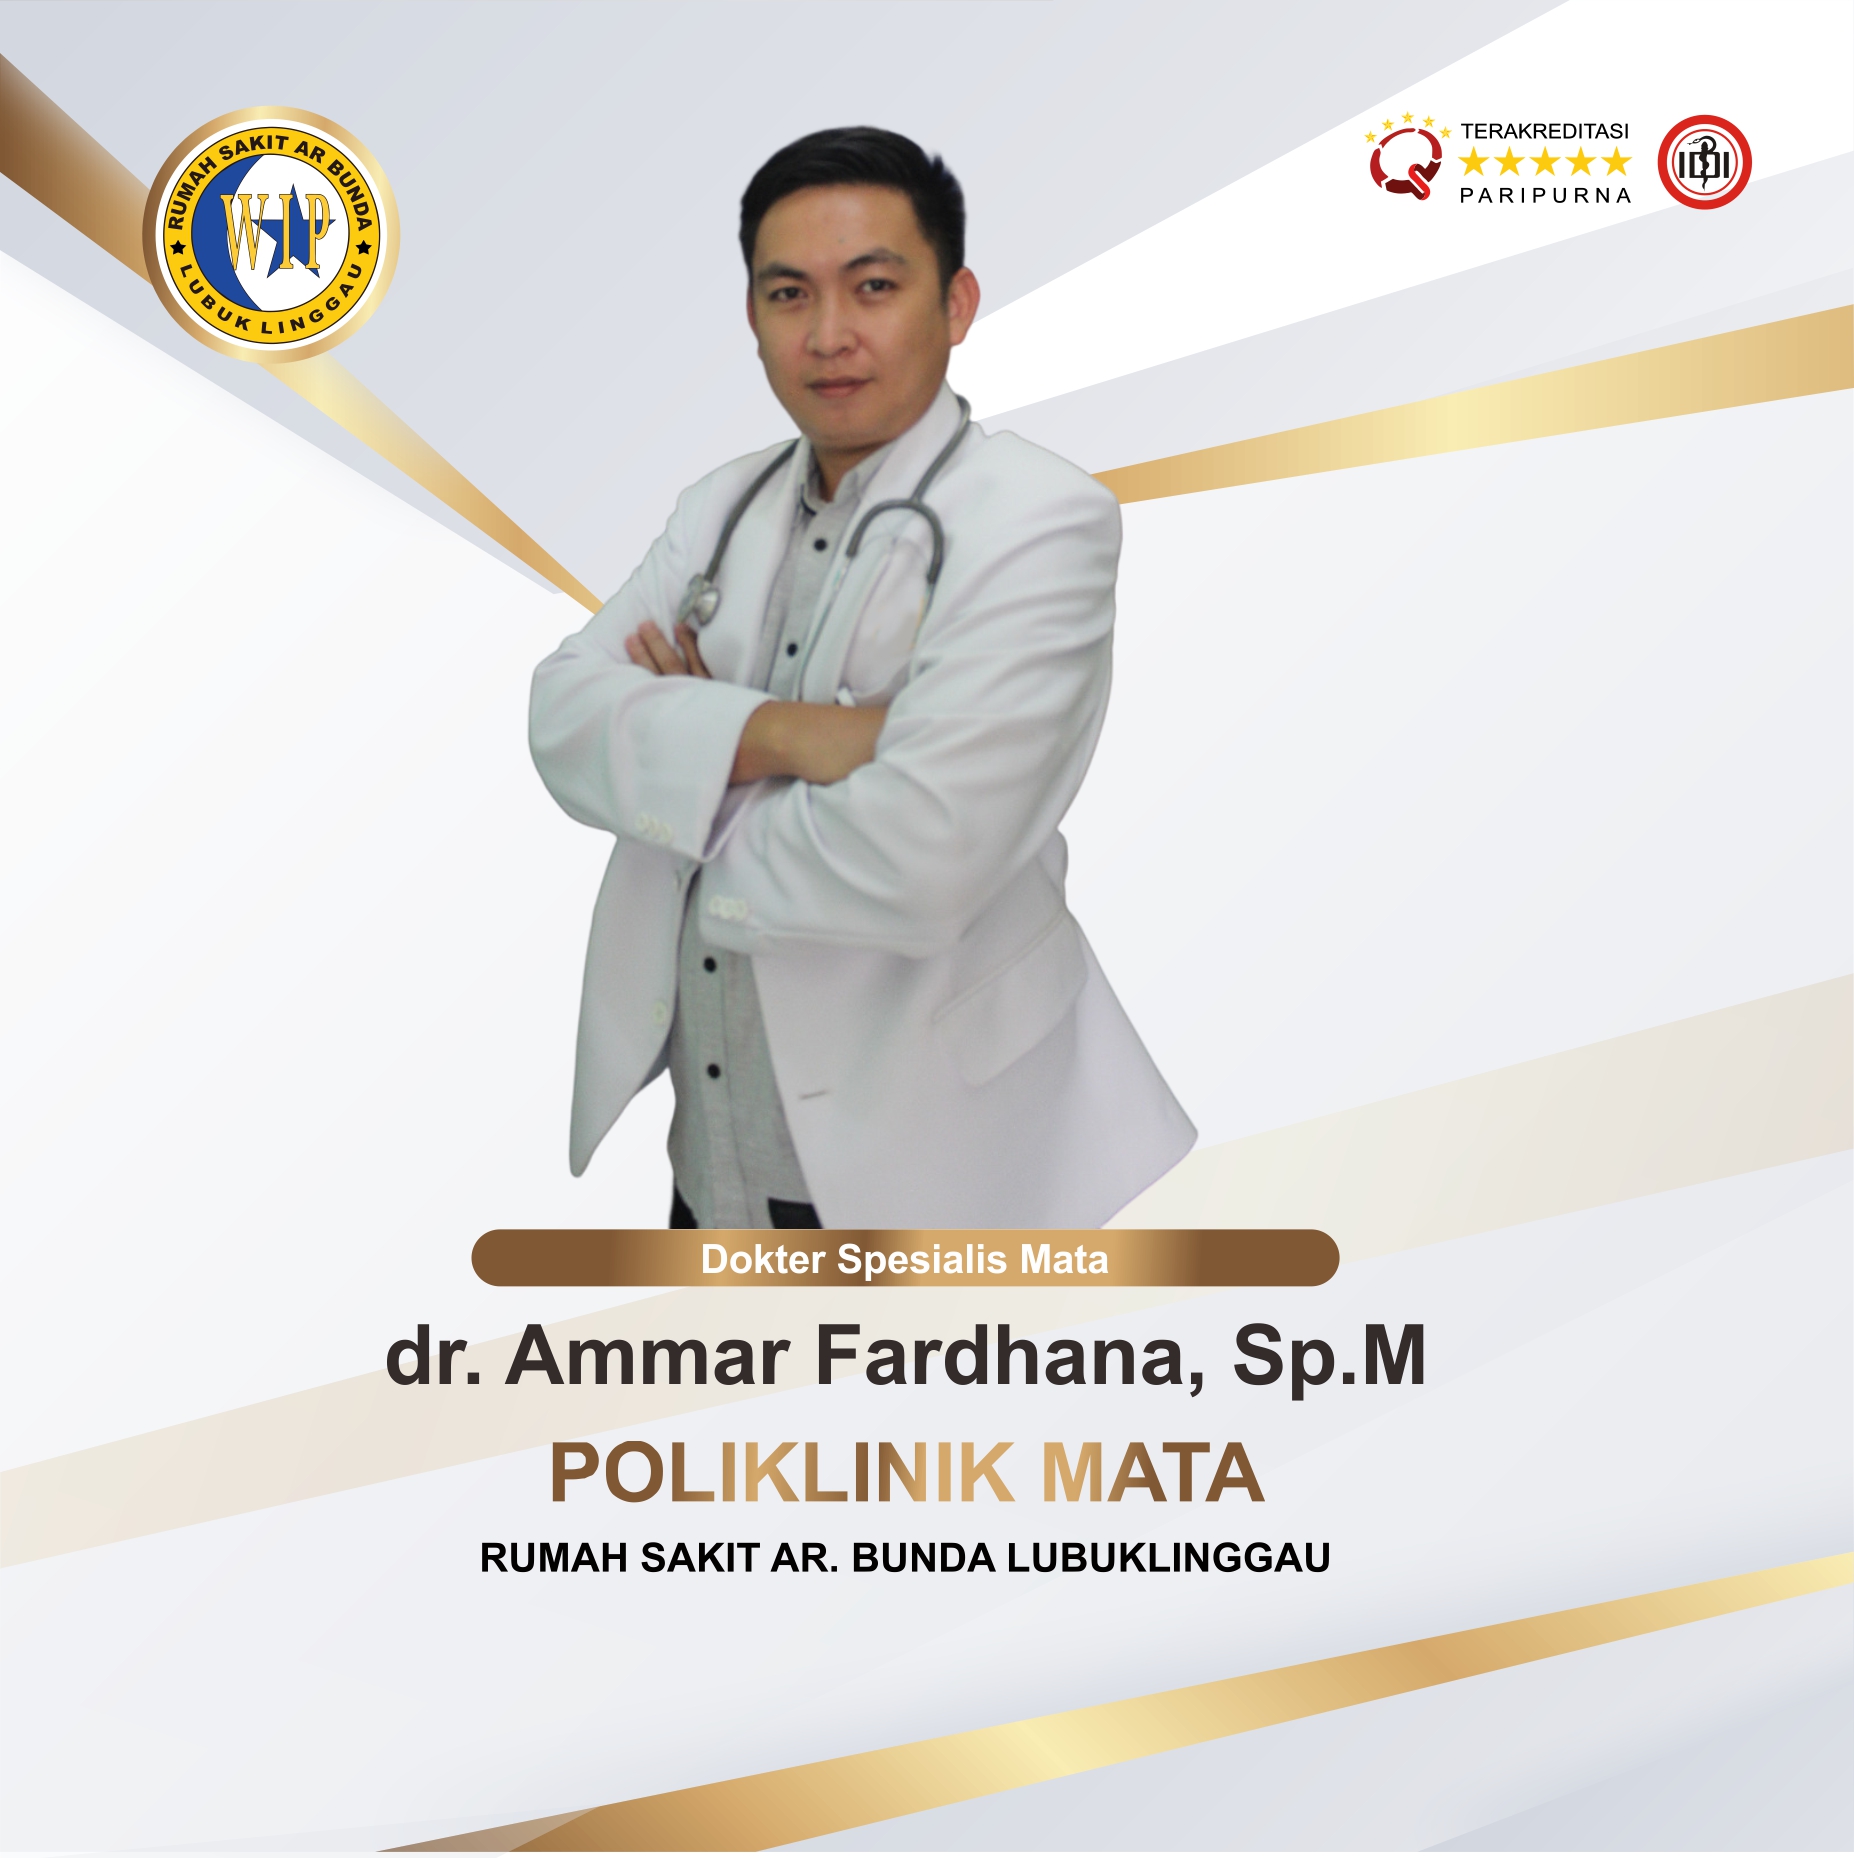 dr. Ammar Fardhana, Sp.M